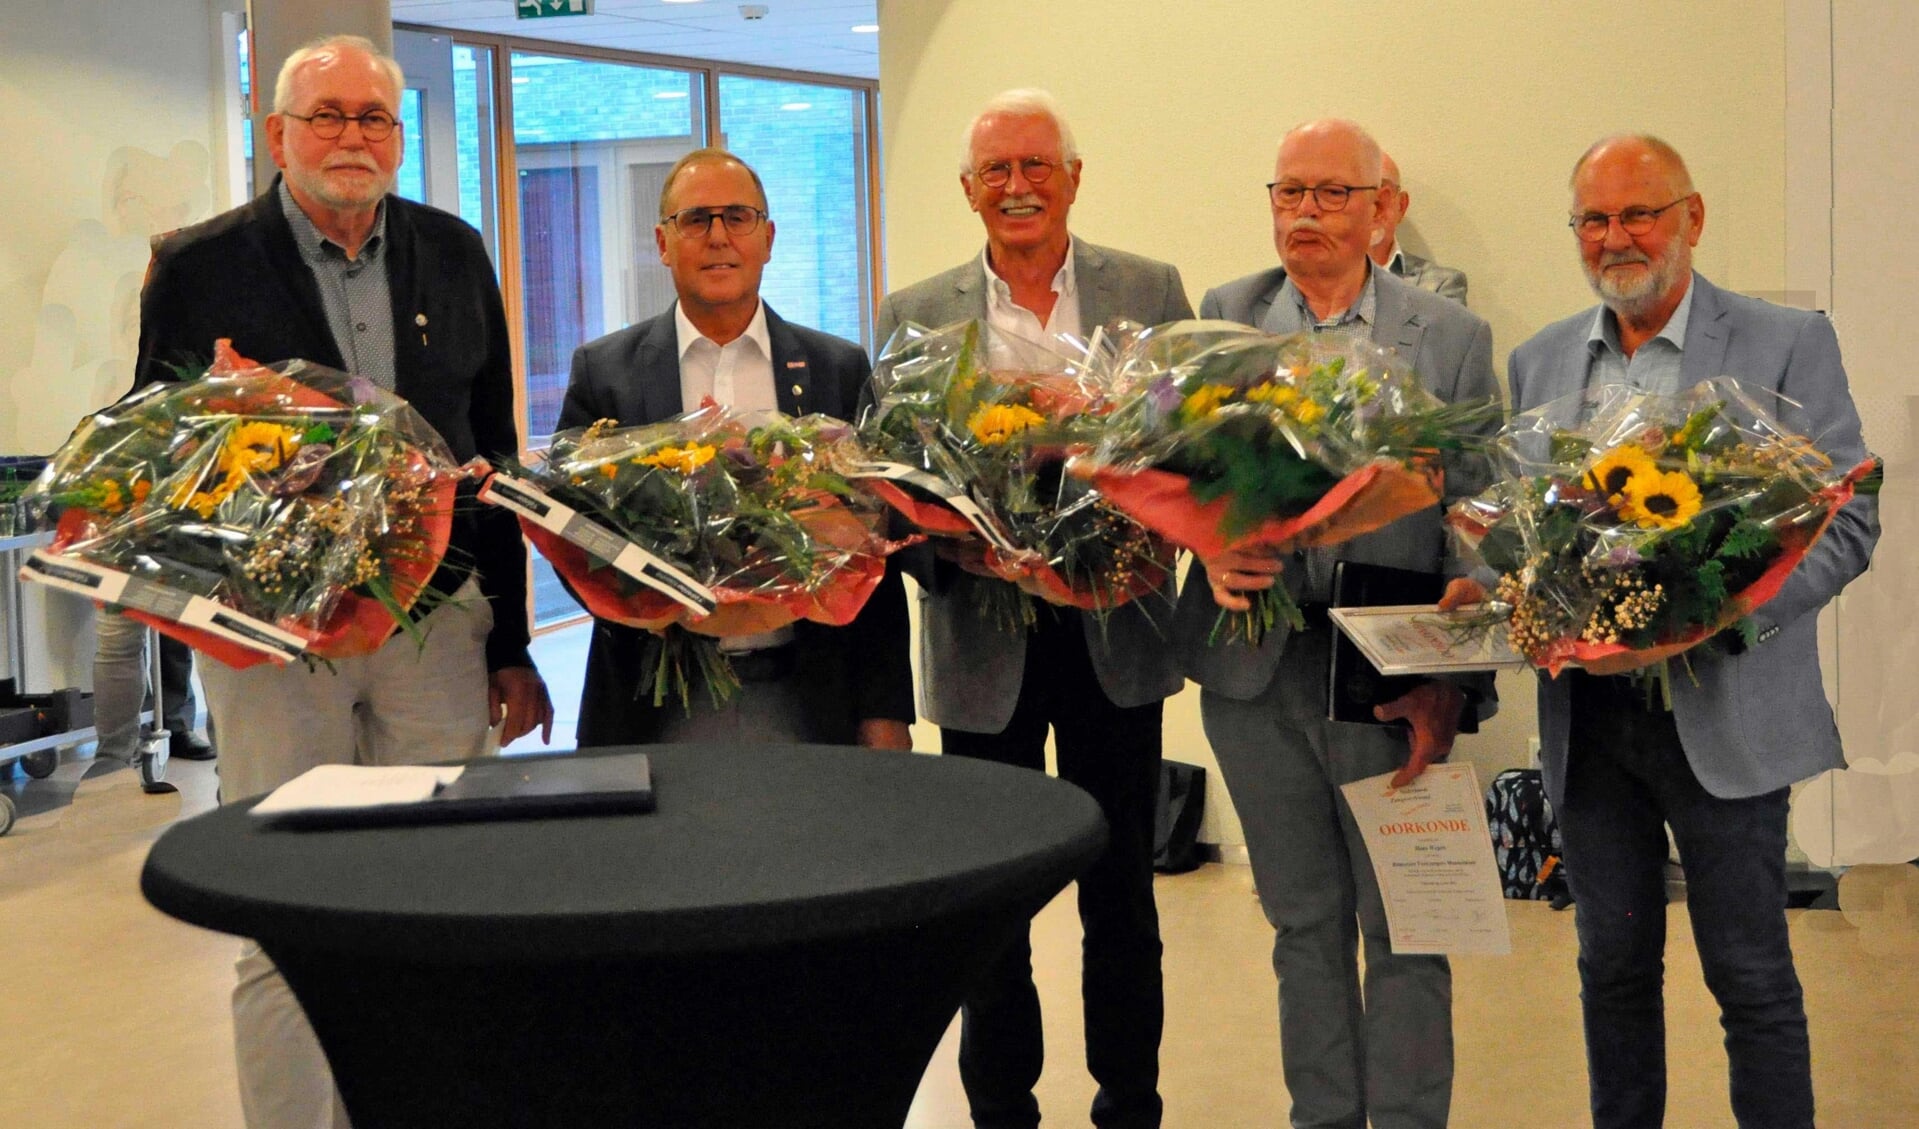 De jubilarissen Bep van Barneveld, Dick van de Pest, Chiel van Butselaar, Hans Wegen en Jan van Manen (van links naar rechts).